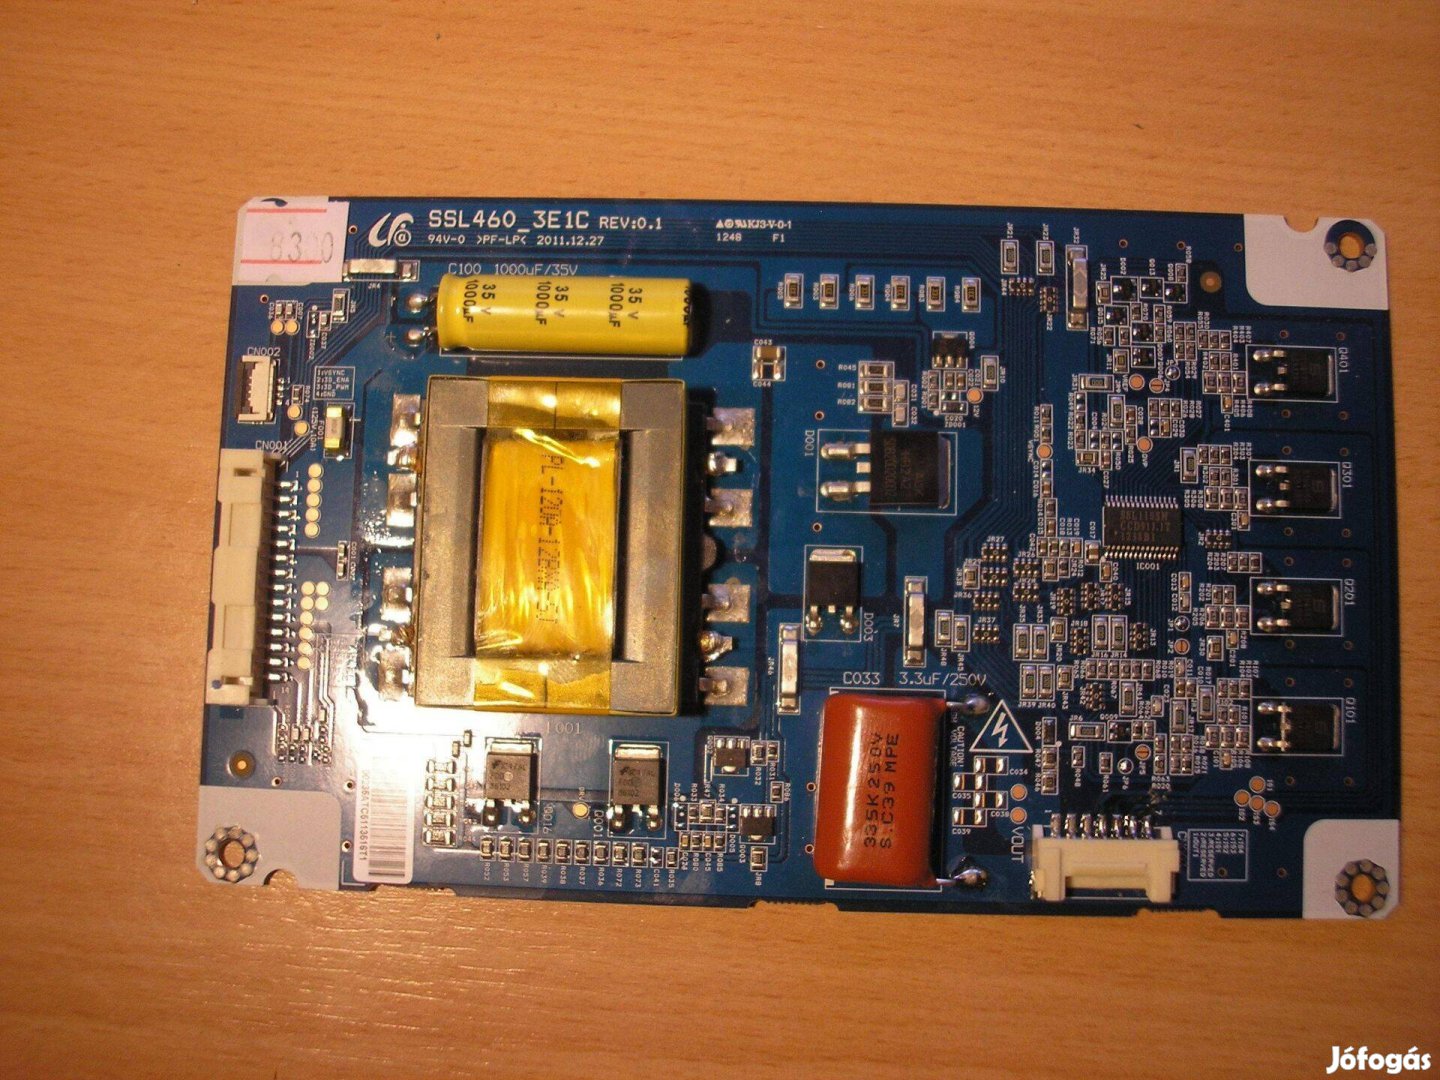 8300 Samsung Grundig LED driver SSL460_3E1C REV:0.1